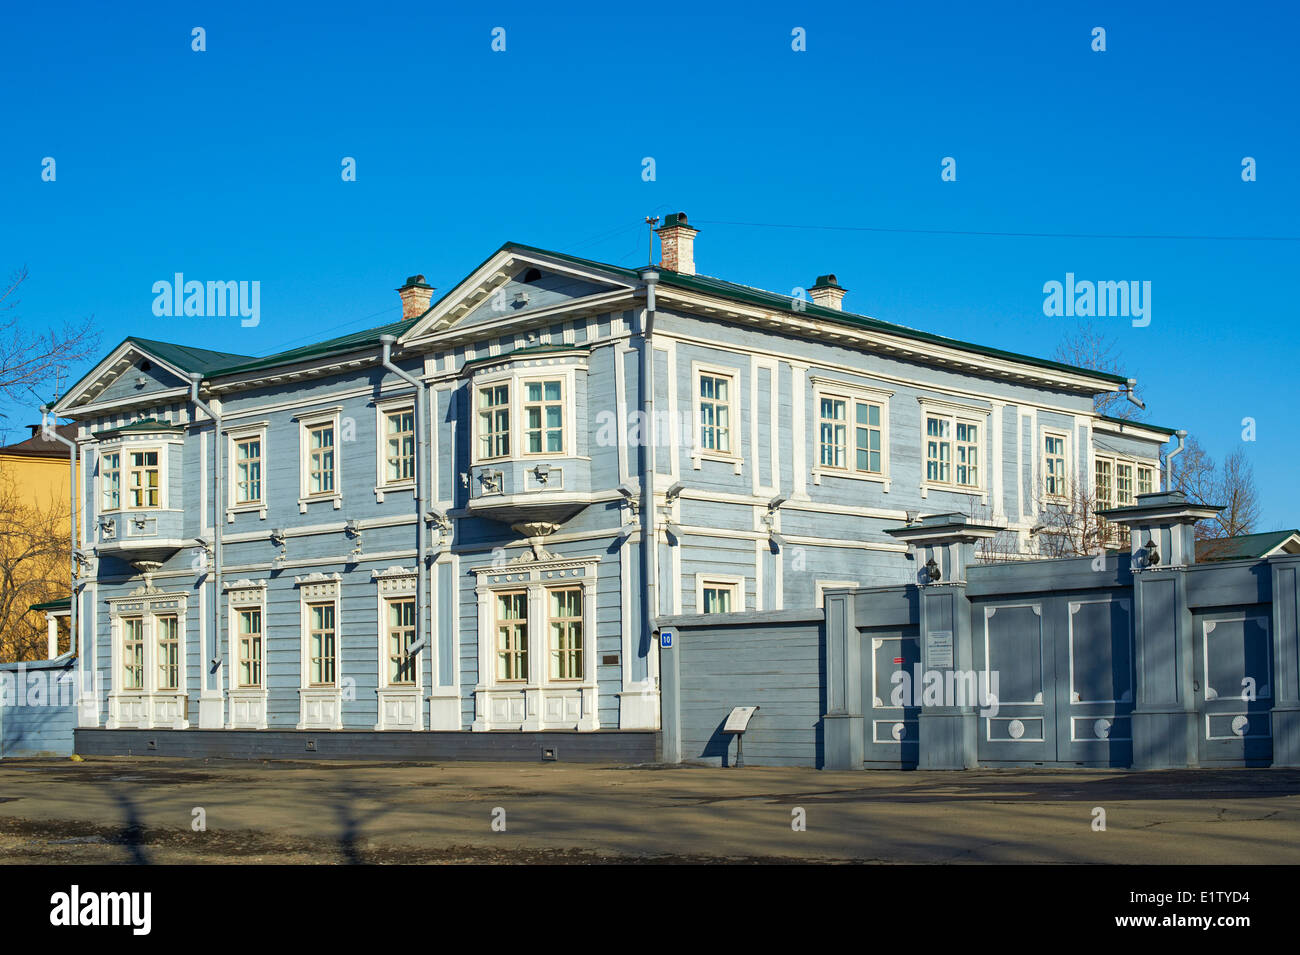 Russia, Siberie, Irkutsk, architettura in legno, la casa del Decembrist Volkonskii Foto Stock